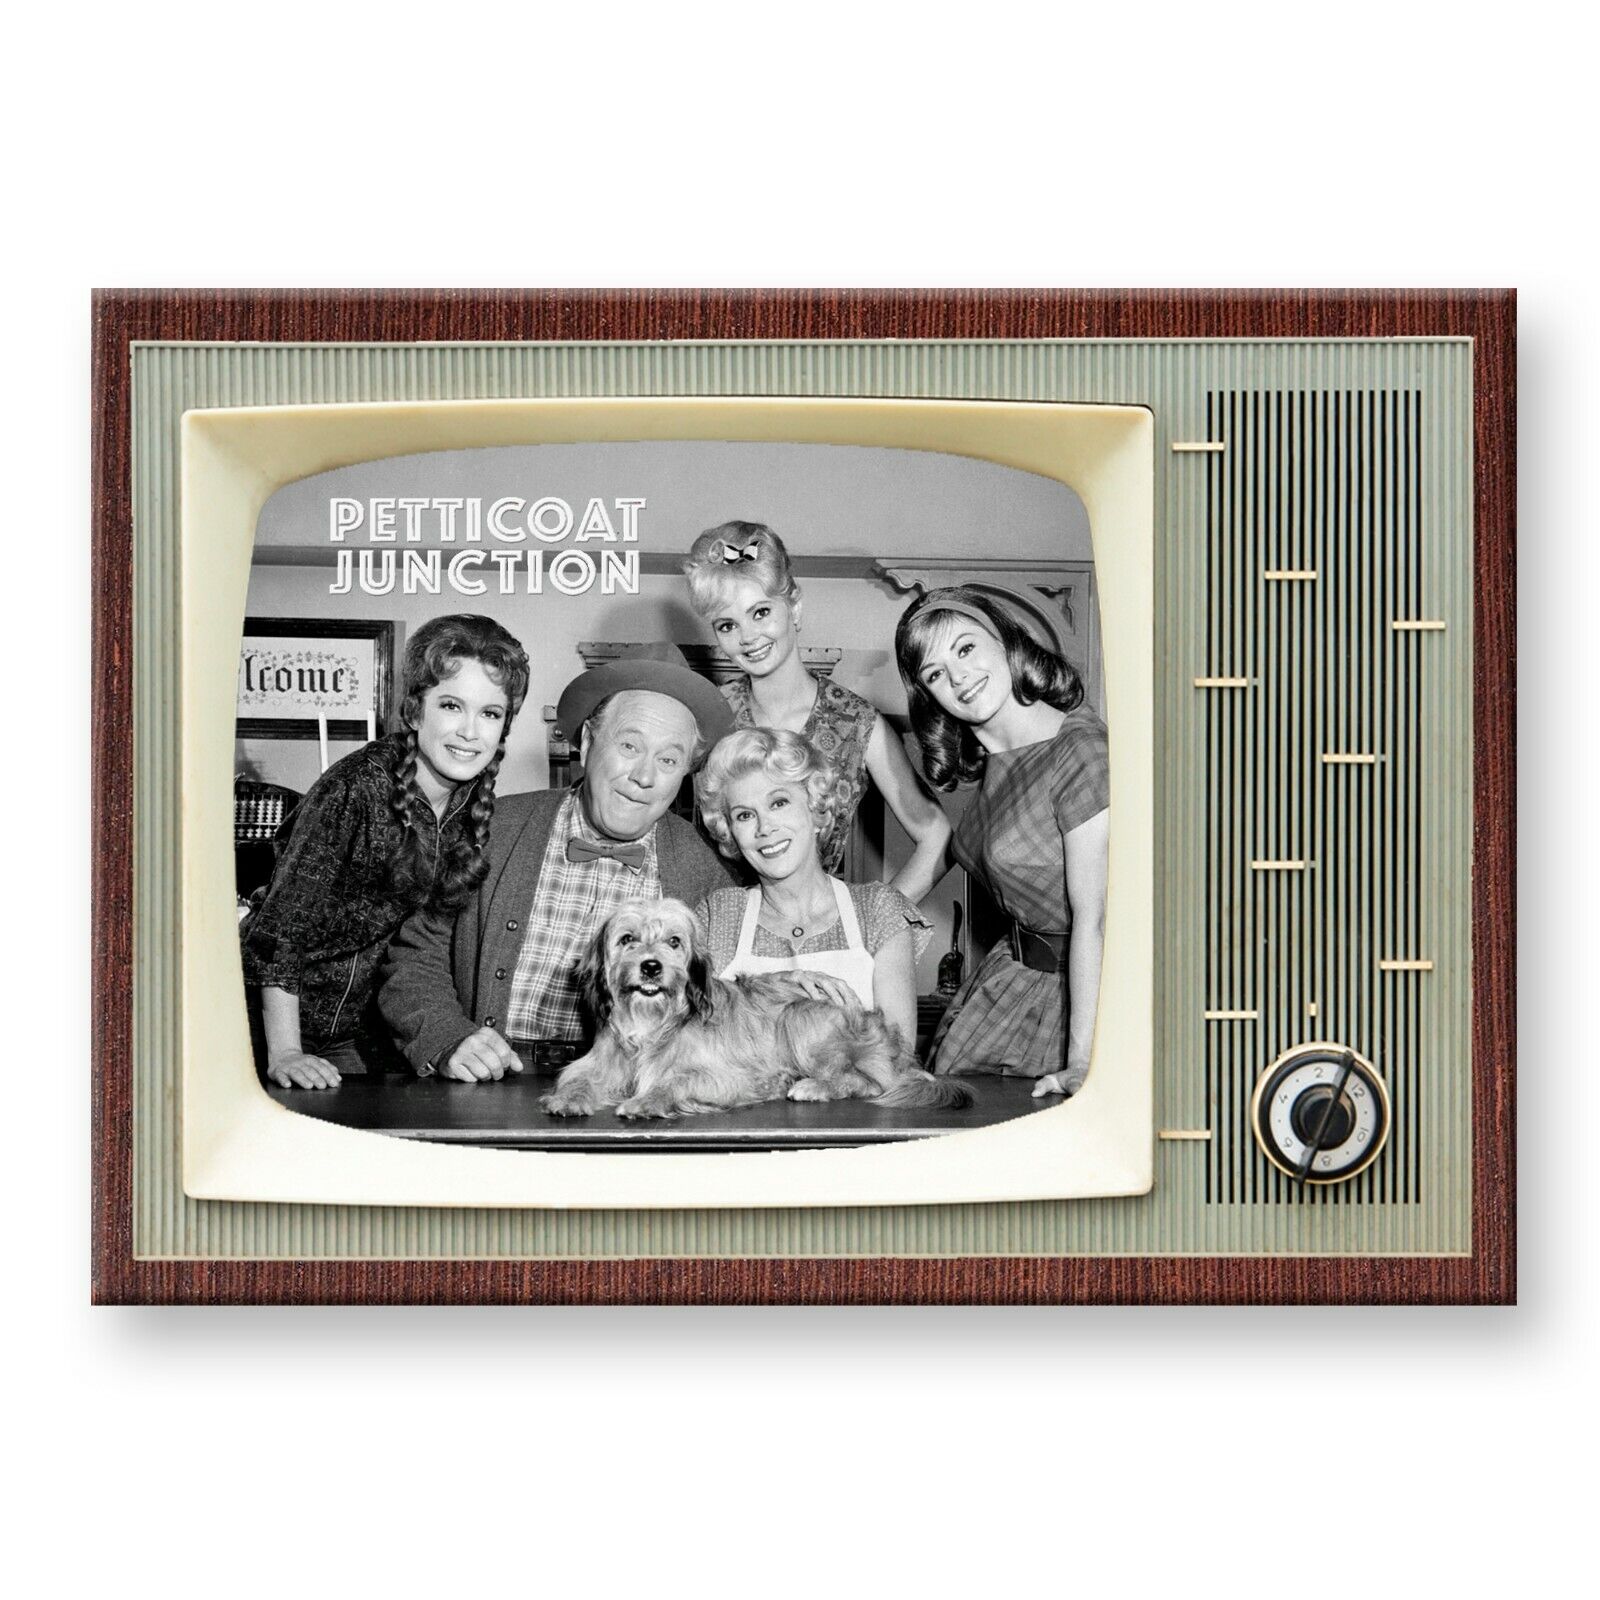 PETTICOAT JUNCTION TV Show Retro TV 3.5 inches x 2.5 inches FRIDGE MAGNET